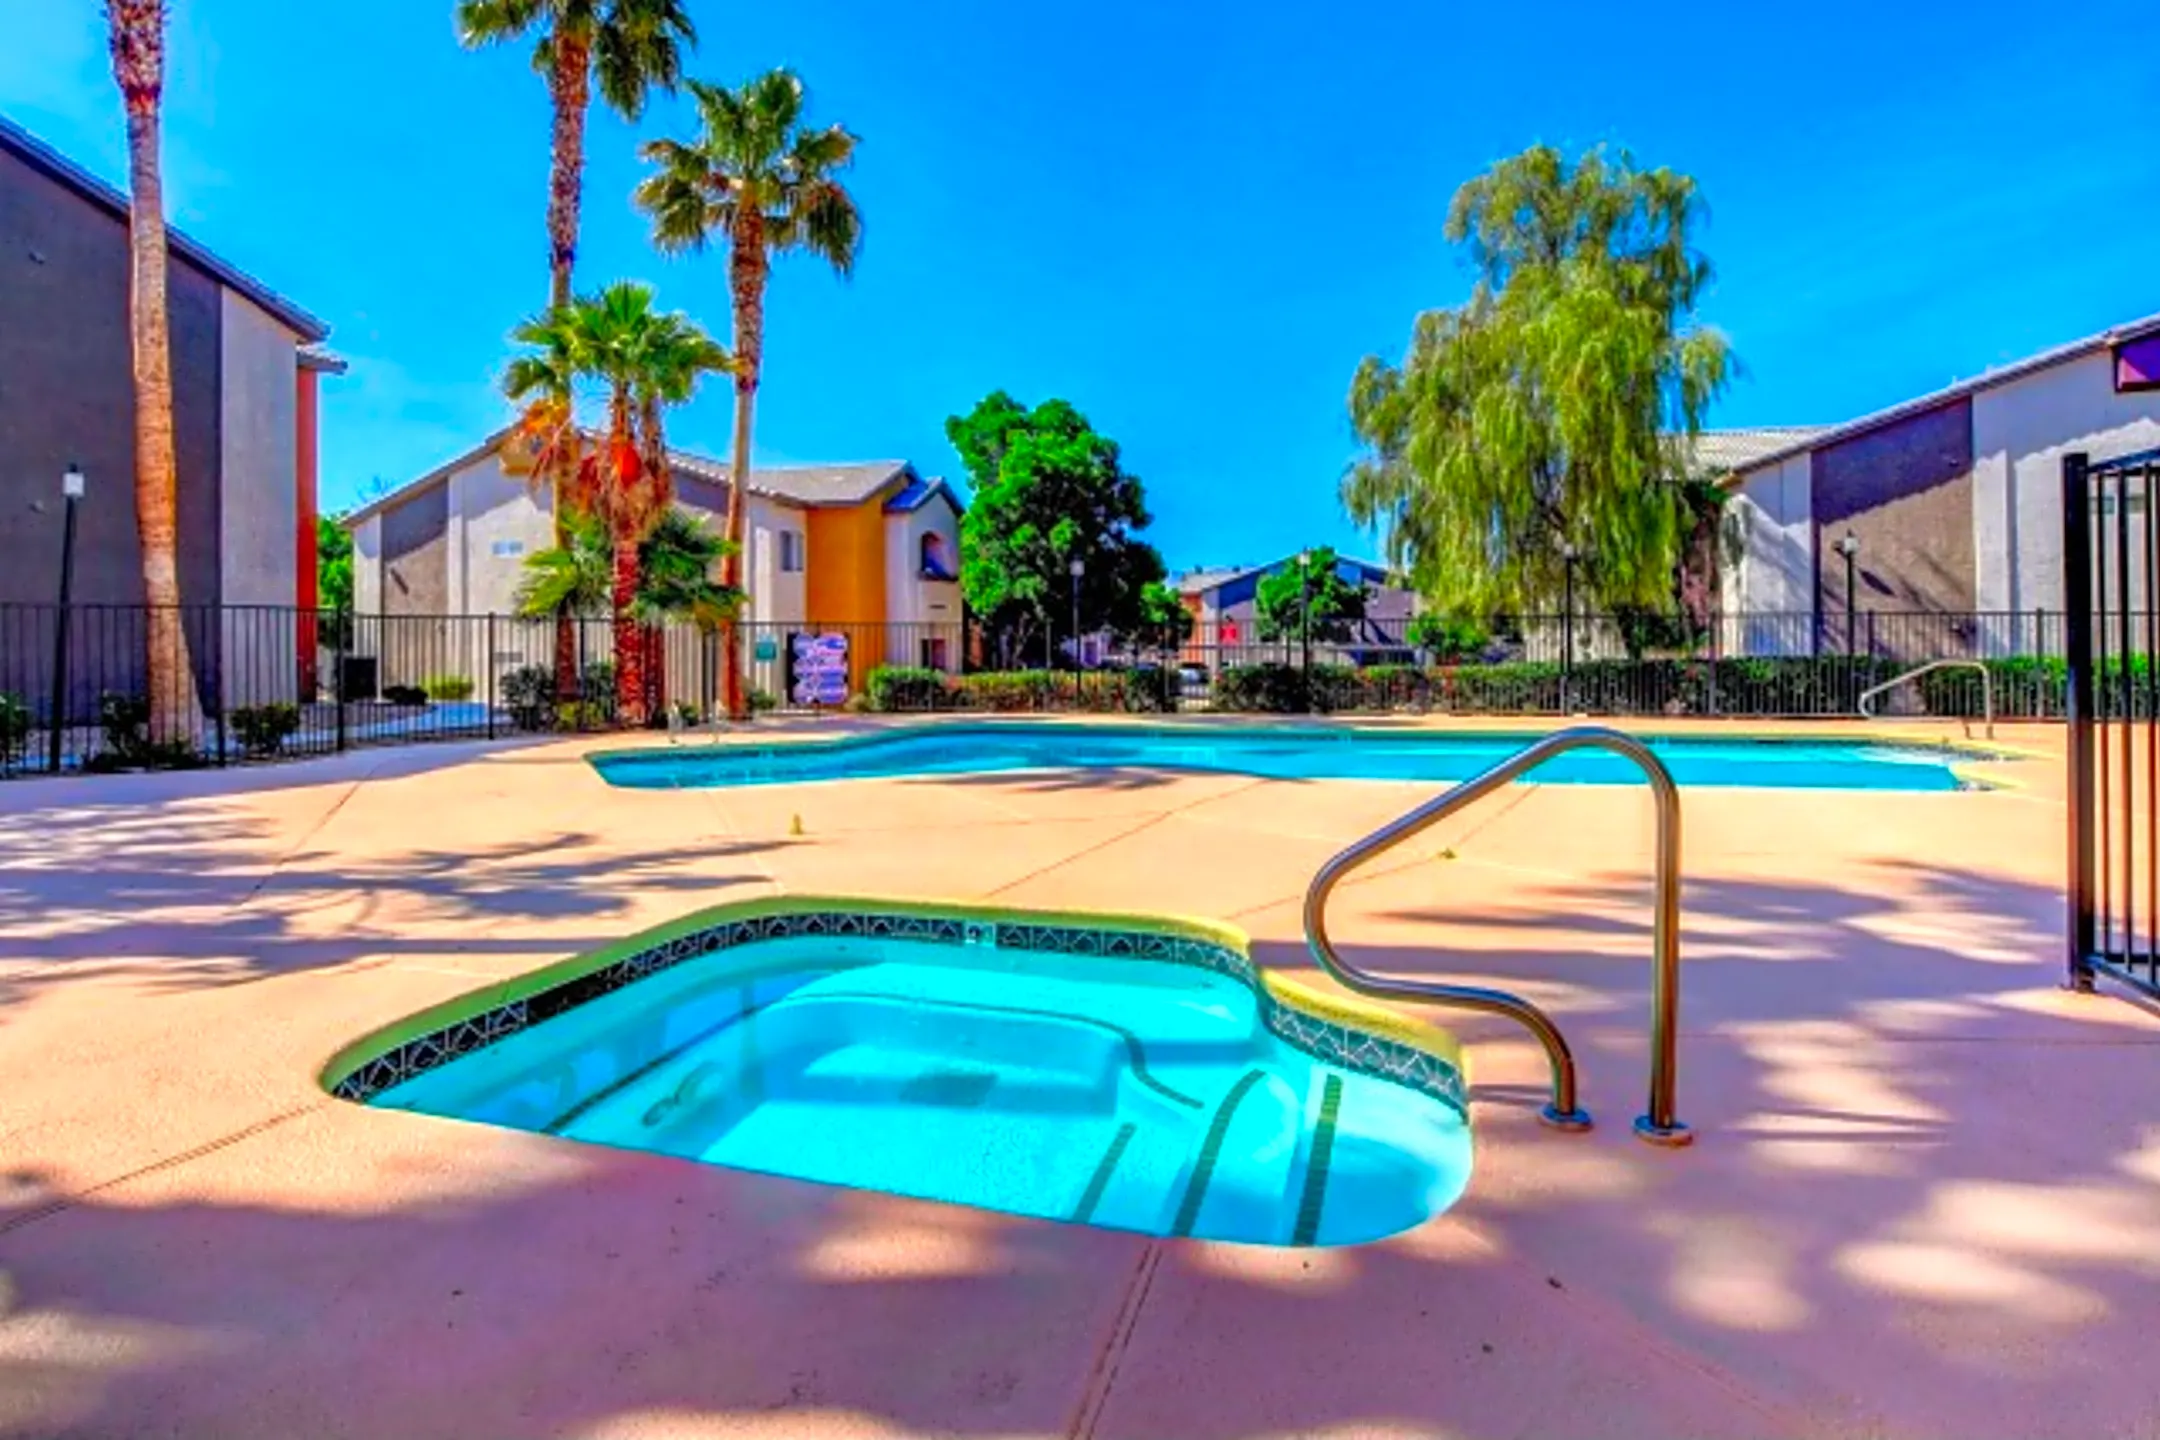 Pool - St. Andrews Club - North Las Vegas, NV